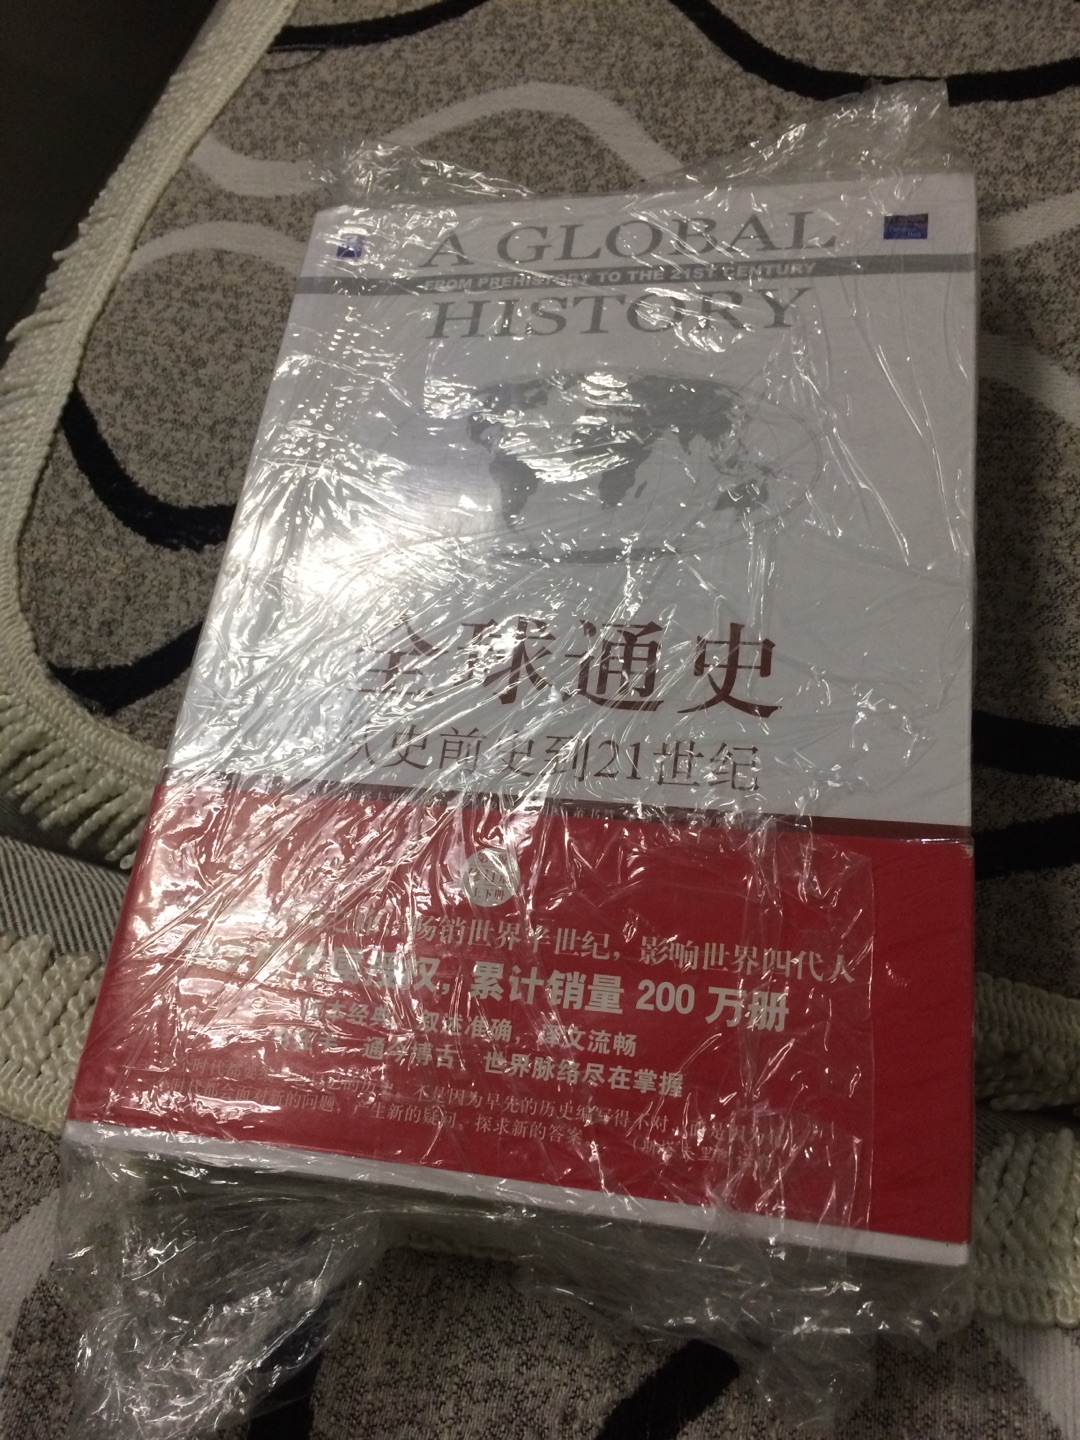 书的封装不好，居然是用保鲜膜包装的，跟客服沟通后退了2000京豆。